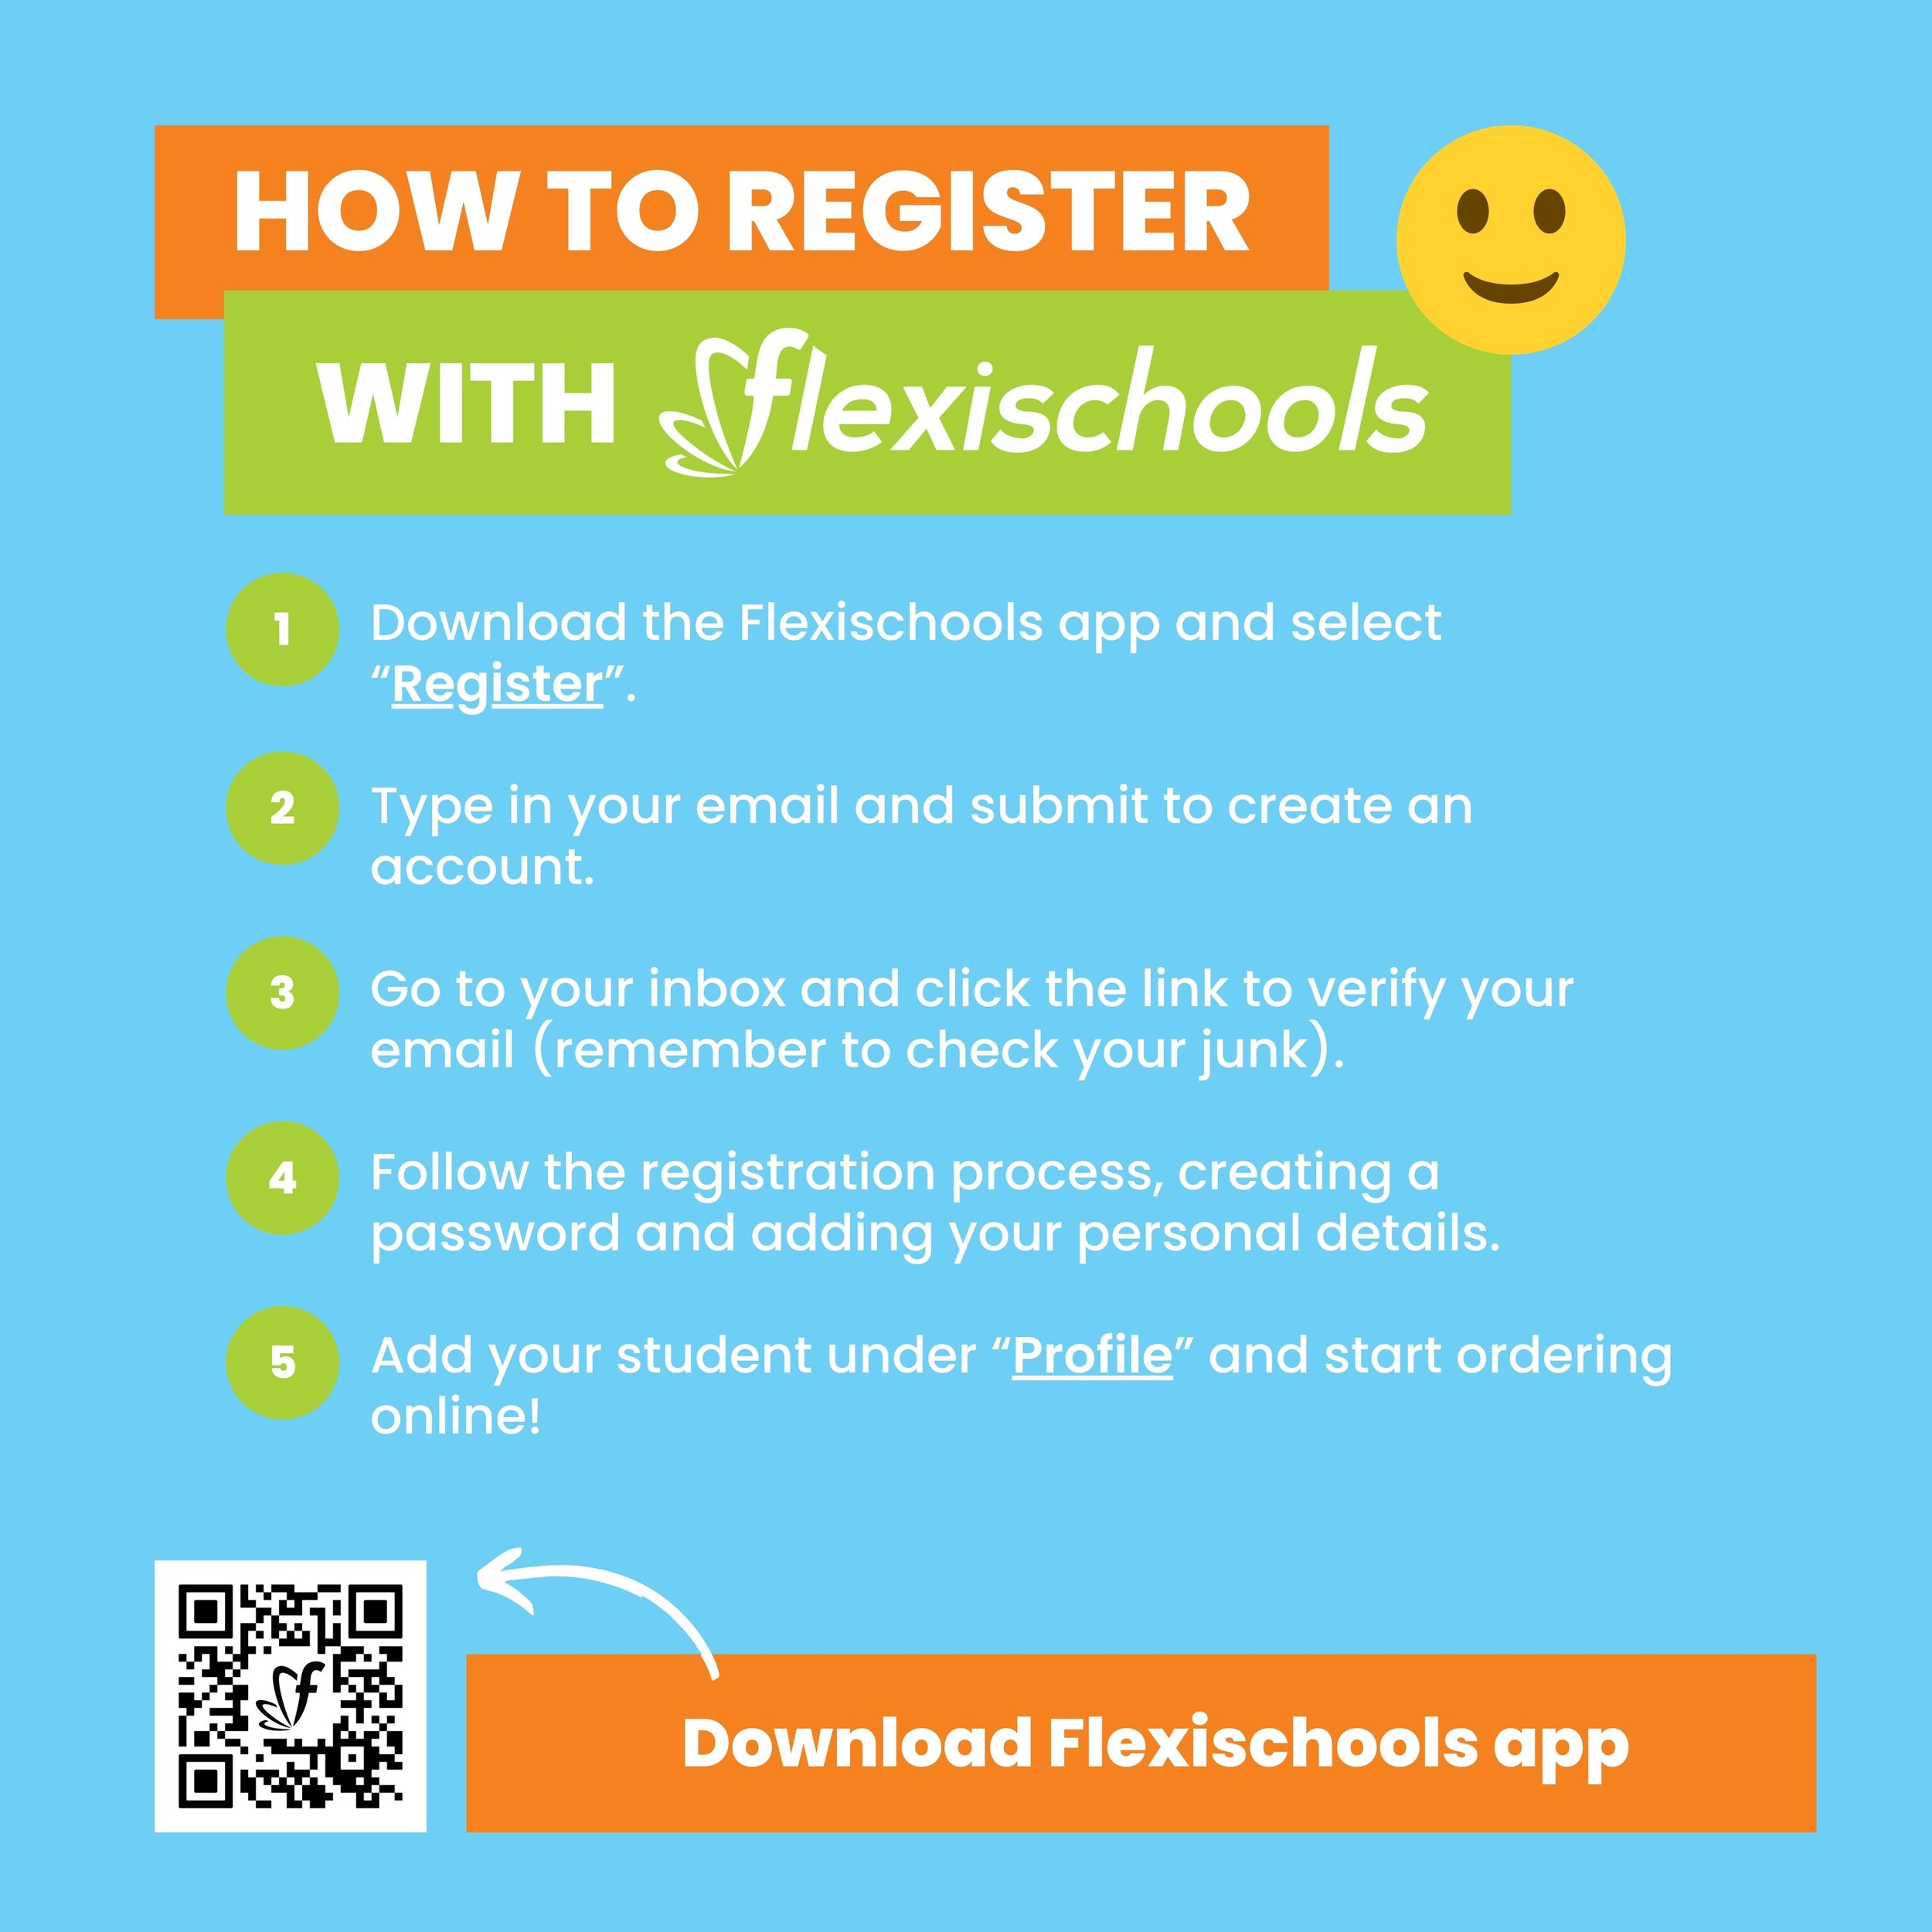 Flexischools_how_to_register.jpg